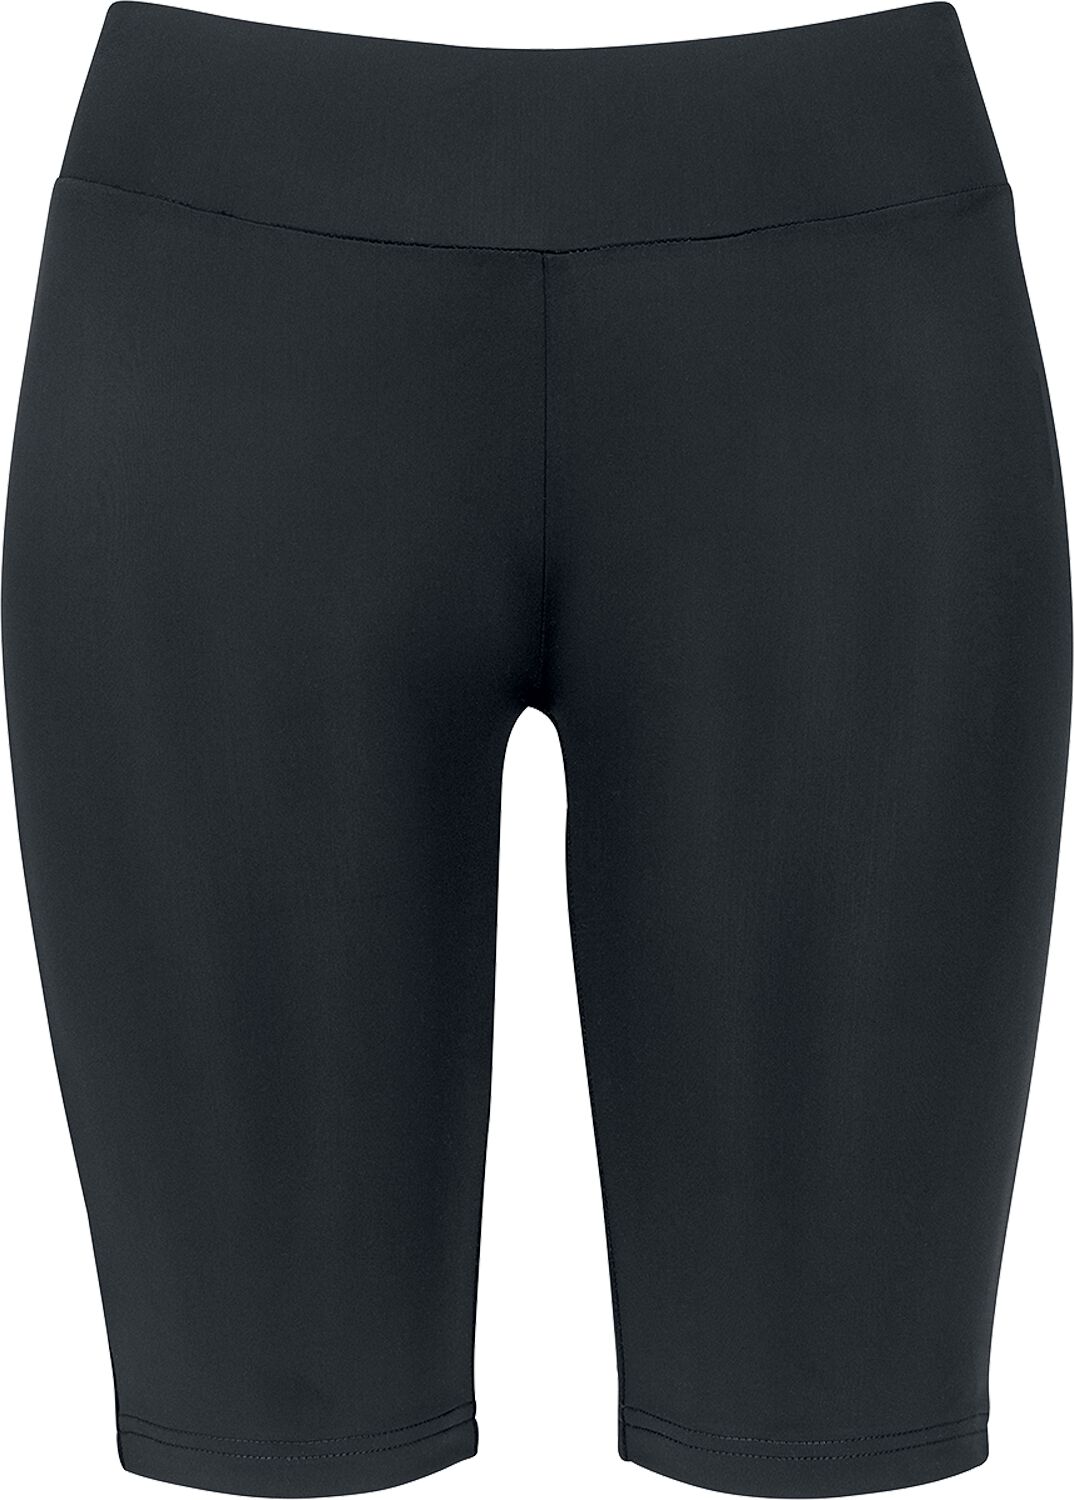 Urban Classics Short - Ladies Cycle Shorts - XS bis XL - für Damen - Größe XS - schwarz